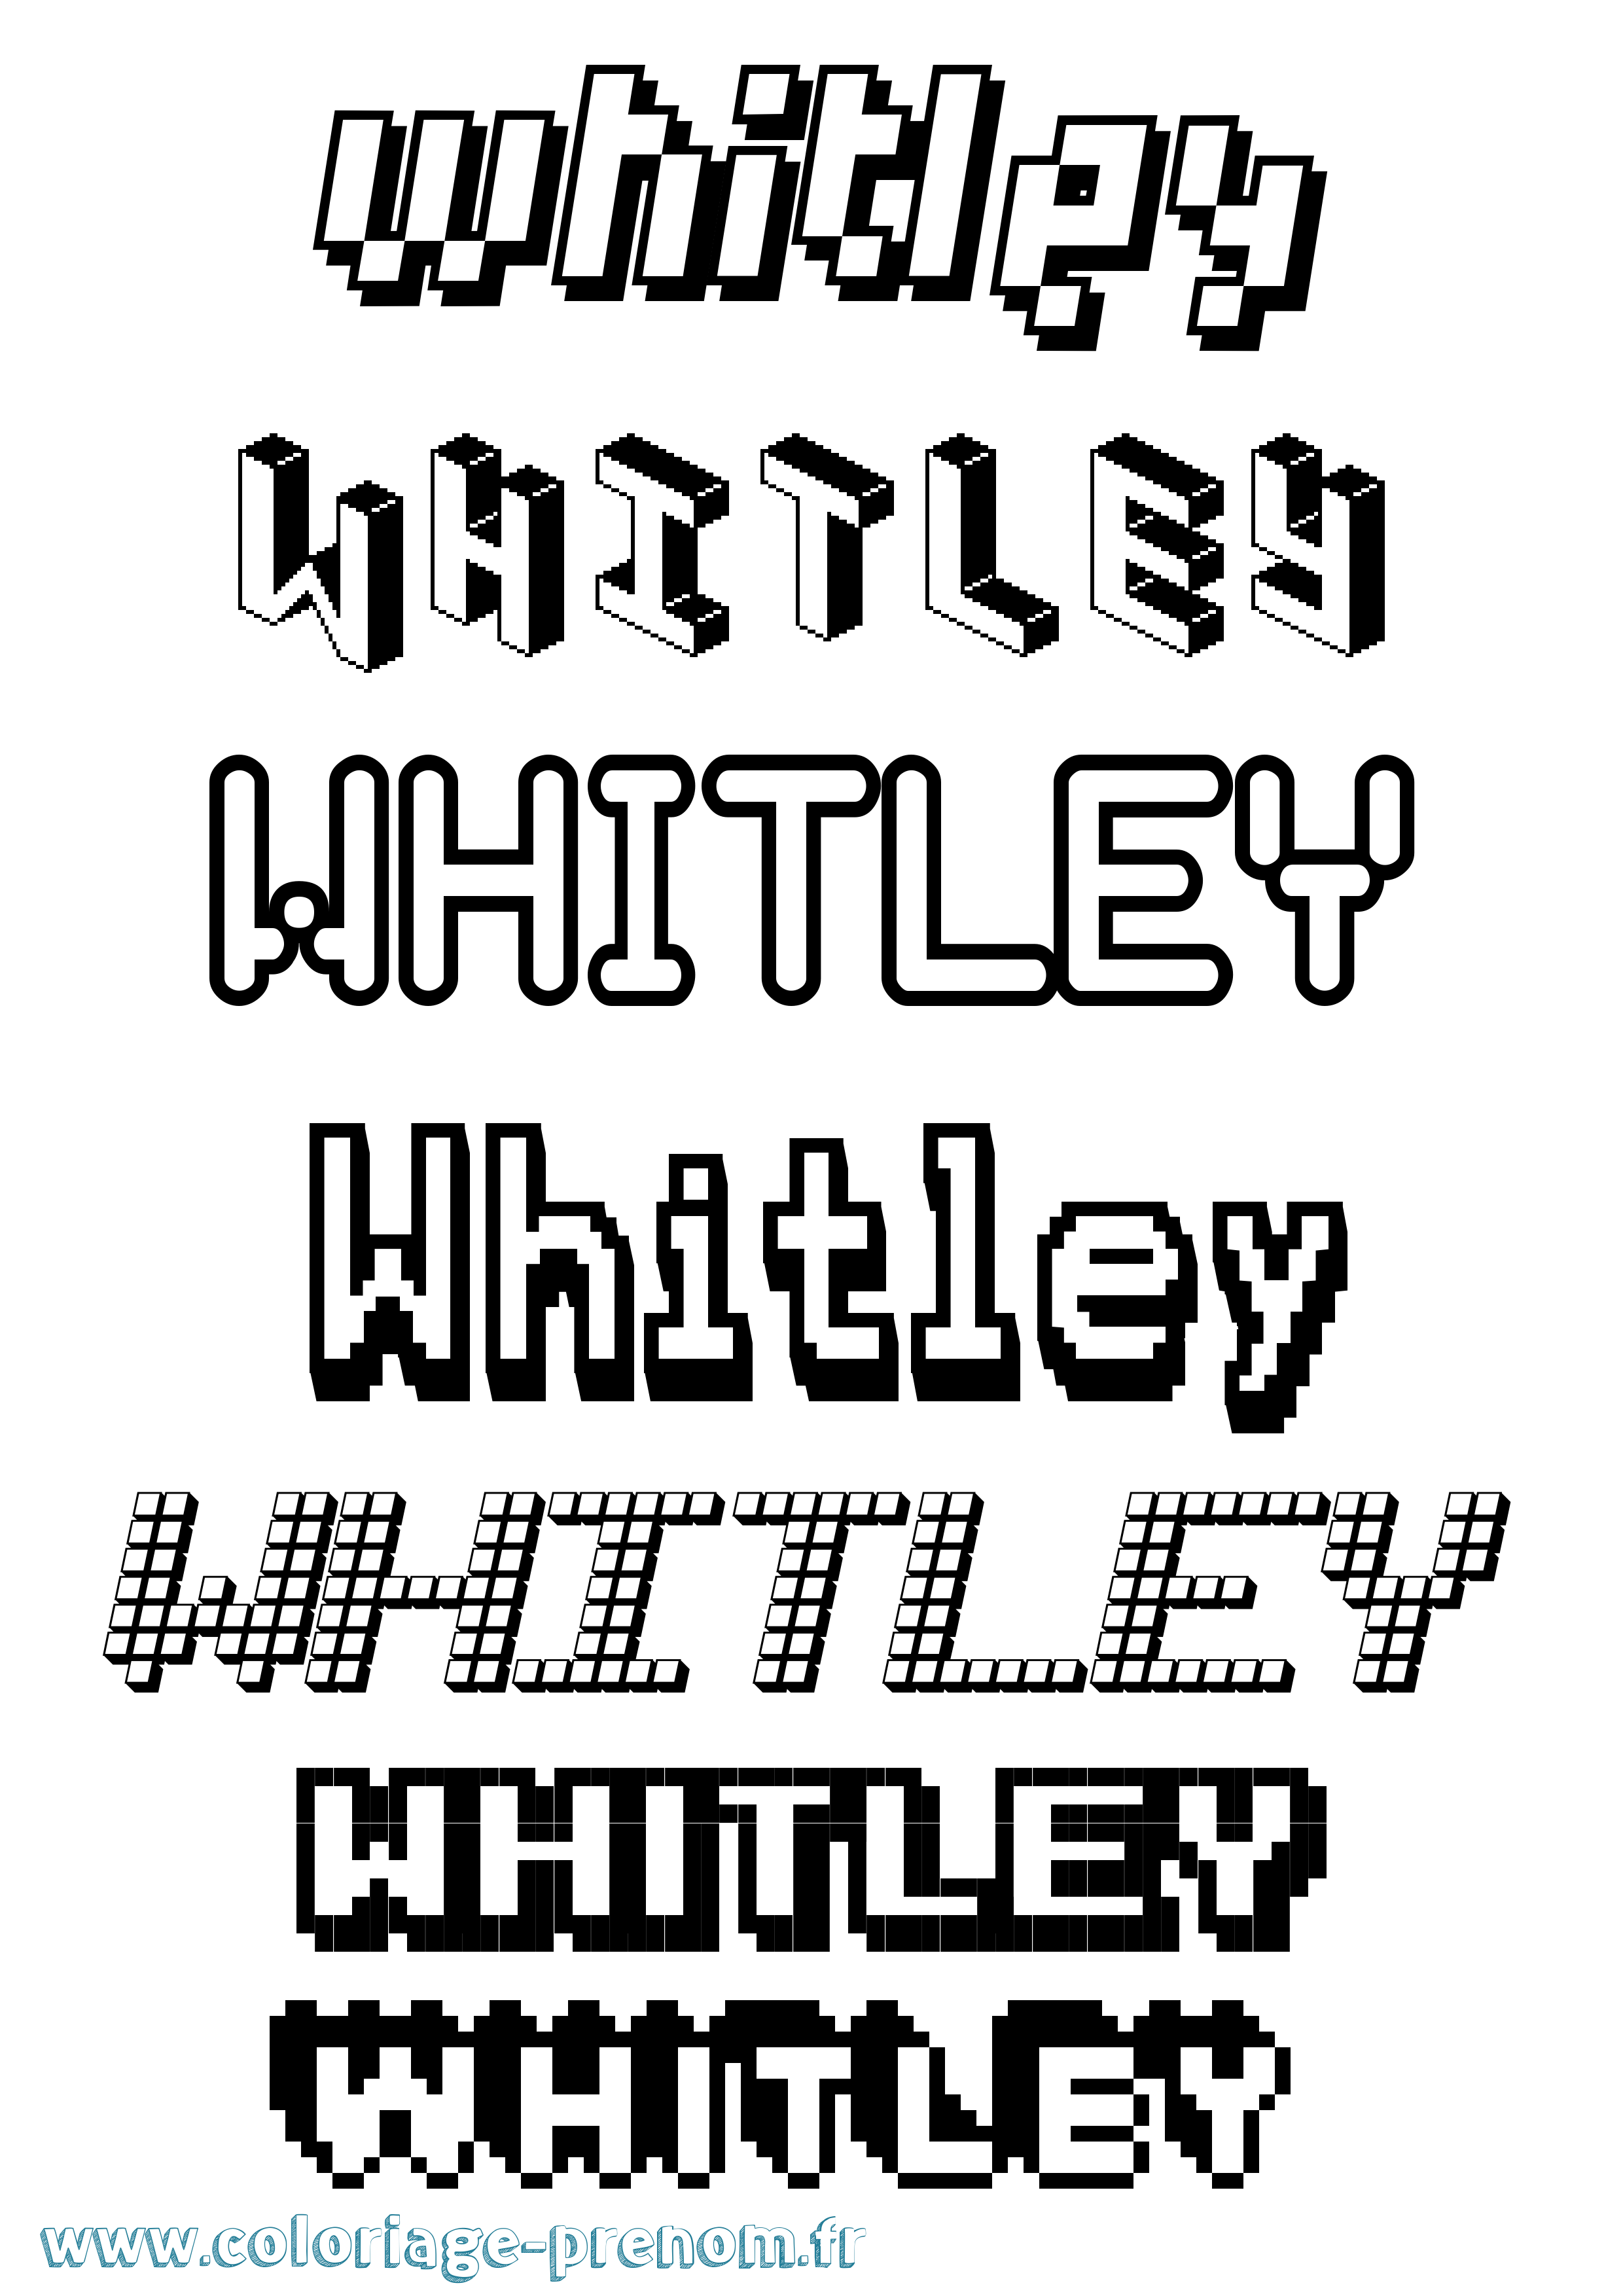 Coloriage prénom Whitley Pixel